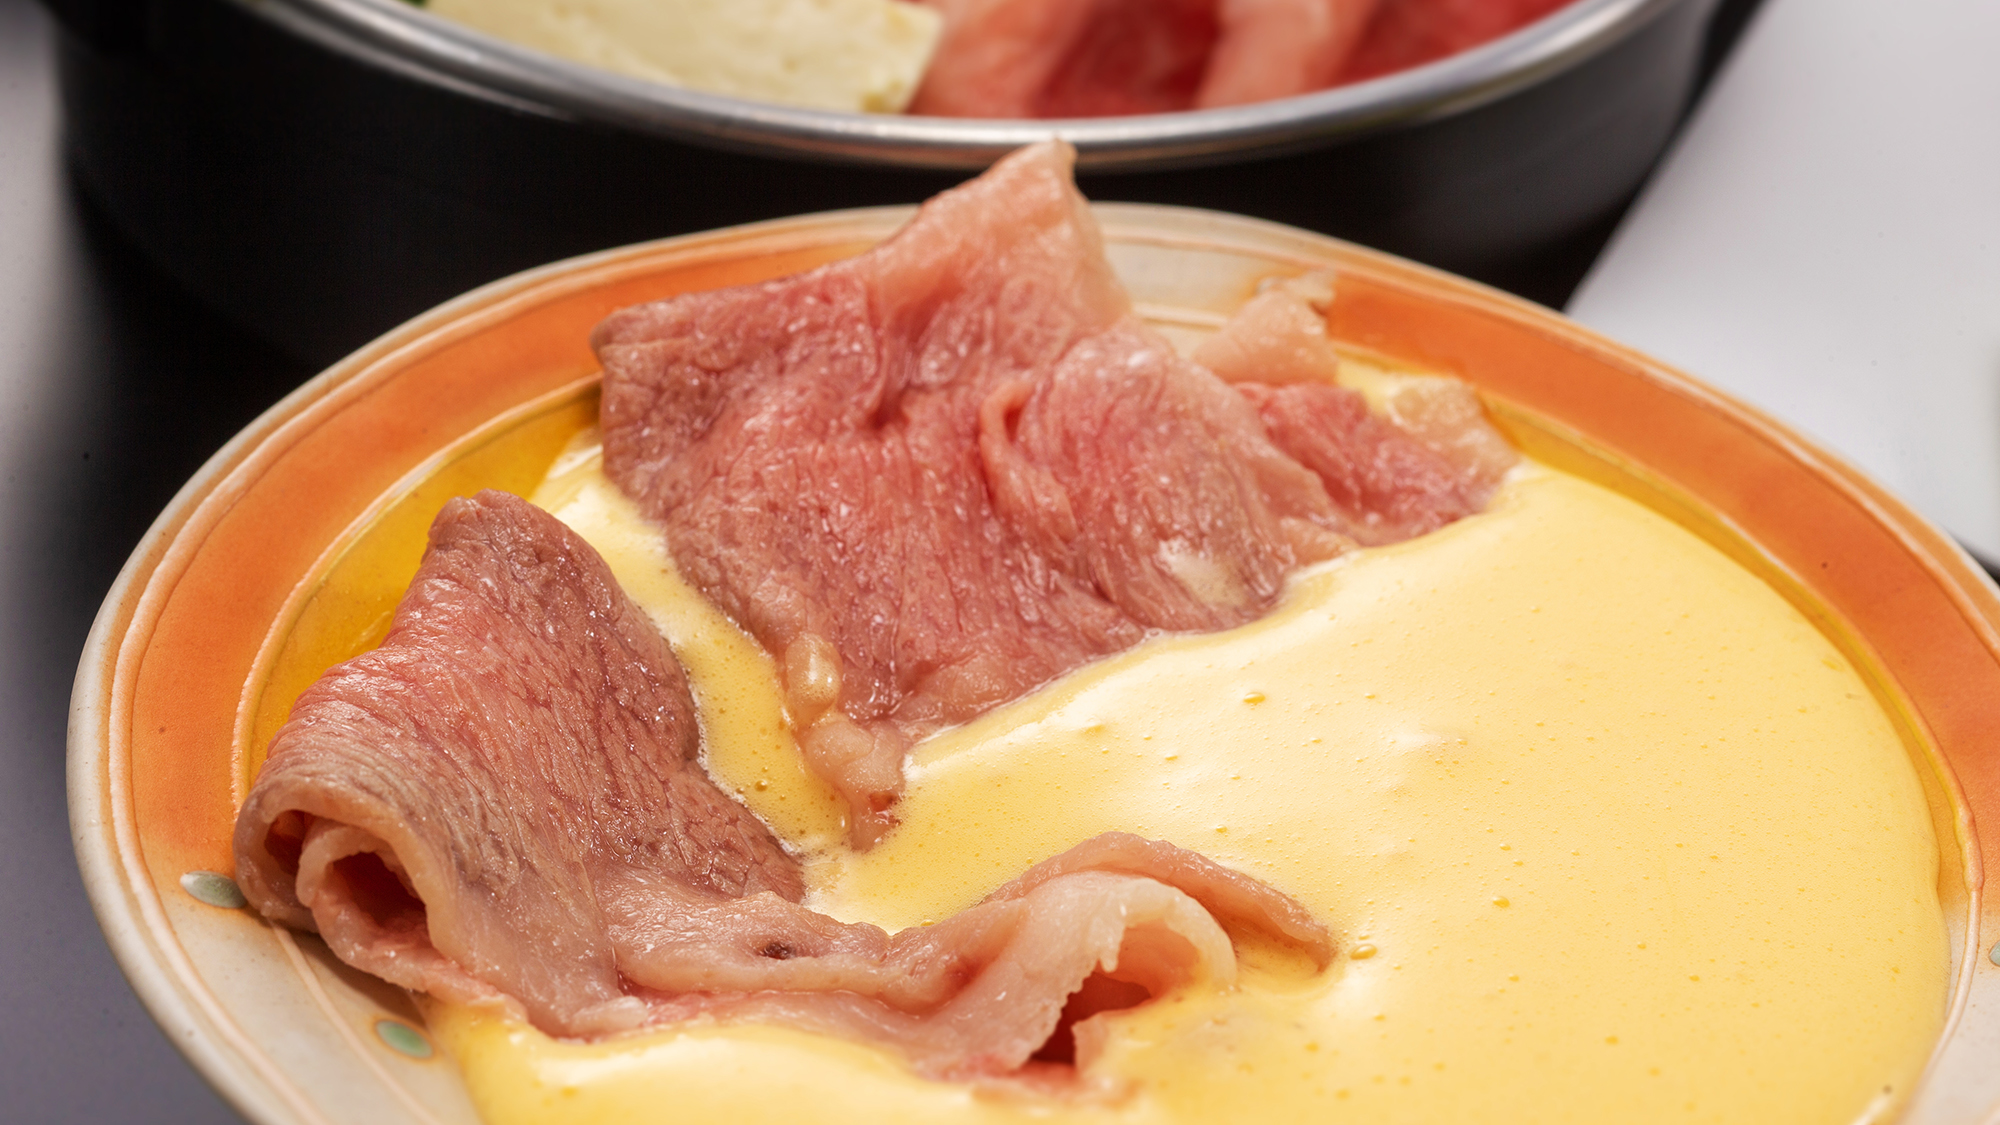 “濃厚なホイップ卵黄”を付けて食べるオリジナルすき焼き。こだわりお肉の新しい味わい方。